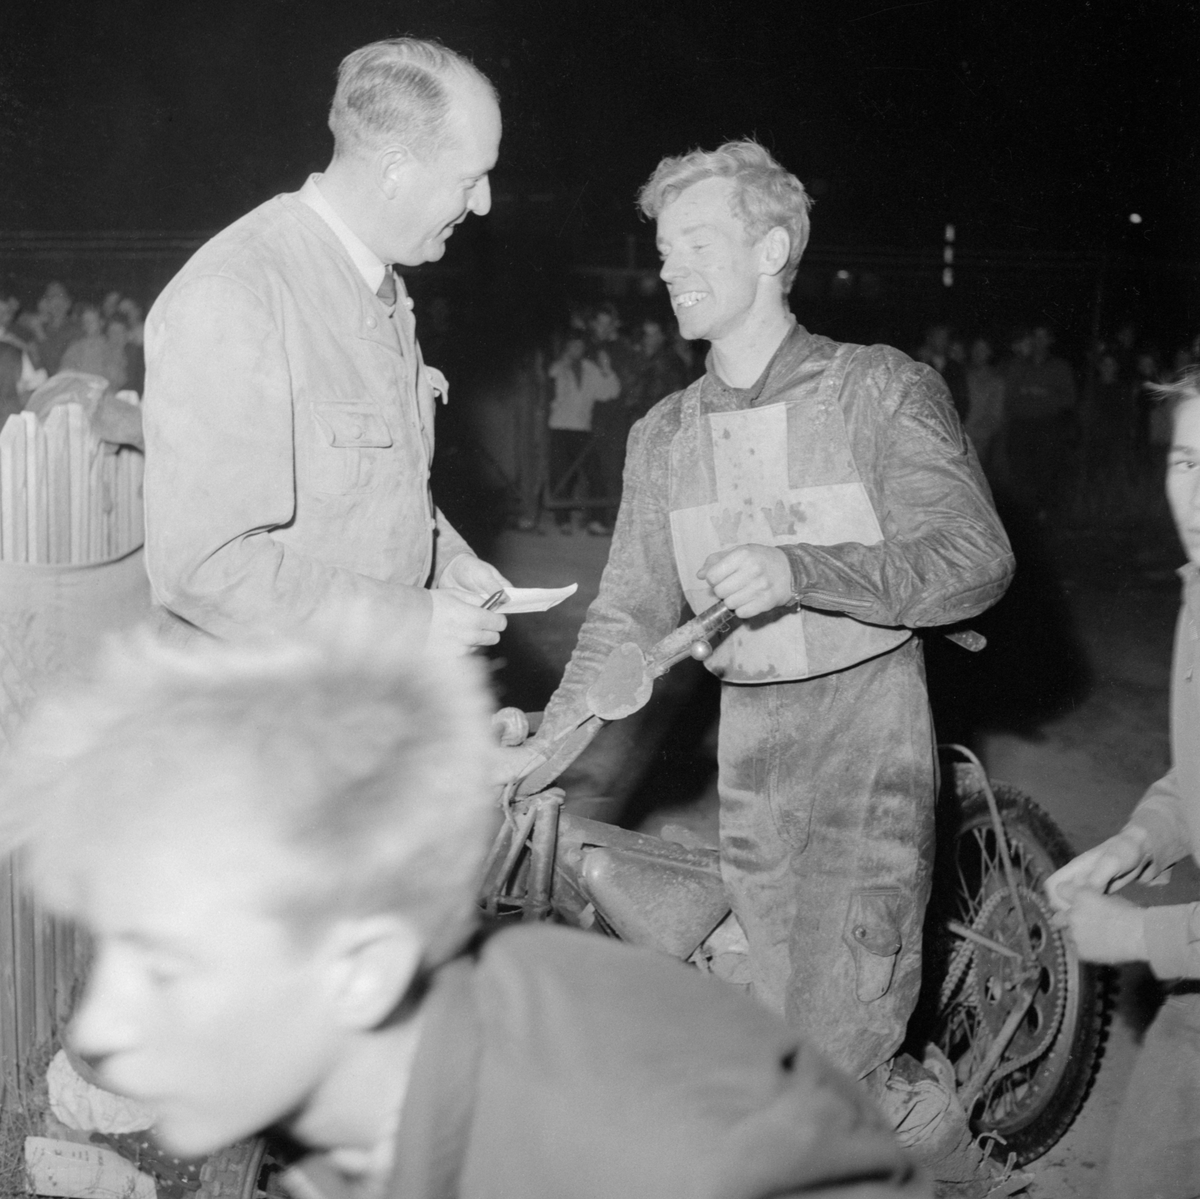 Ove Fundin intervjuas efter svenska landslagets seger över Australasia, ett kombinerat landslag med förare från Australien och Nya Zeeland. Landskampen avgjordes på Kråkvilan i Norrköping den 4 oktober 1955.